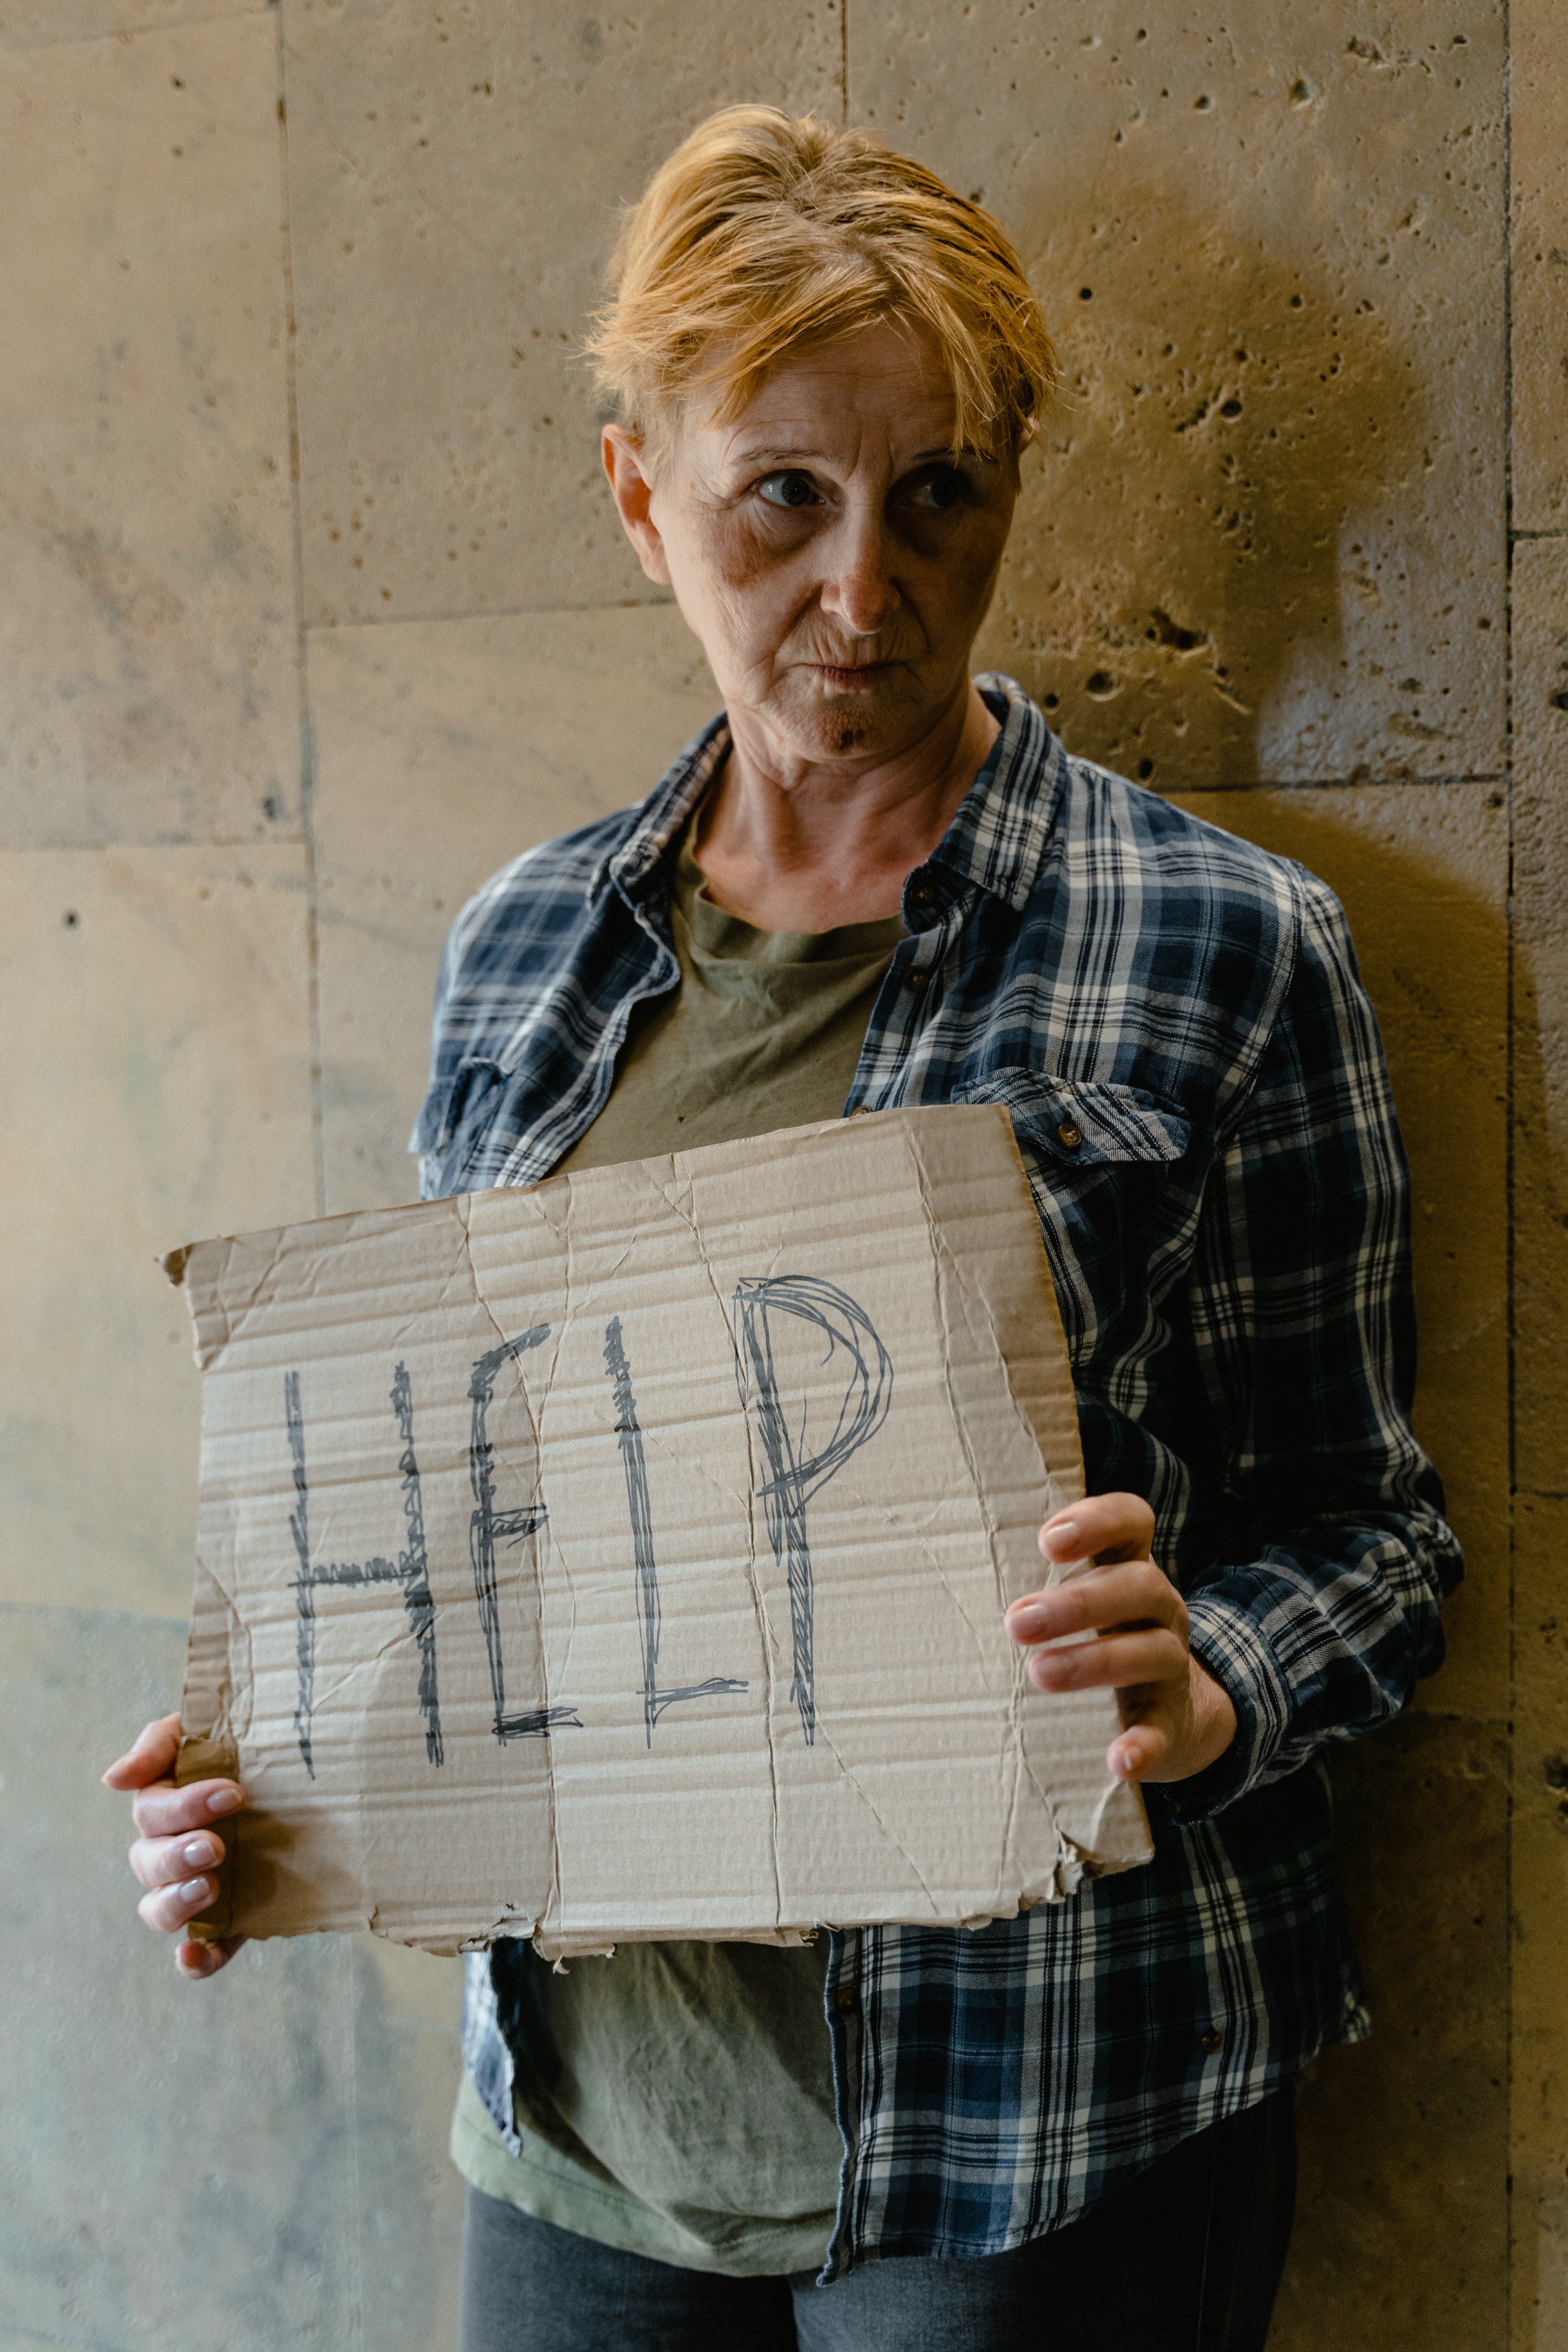 Una mujer sin hogar sosteniendo un cartel que dice: "Ayuda". | Foto: Pexels